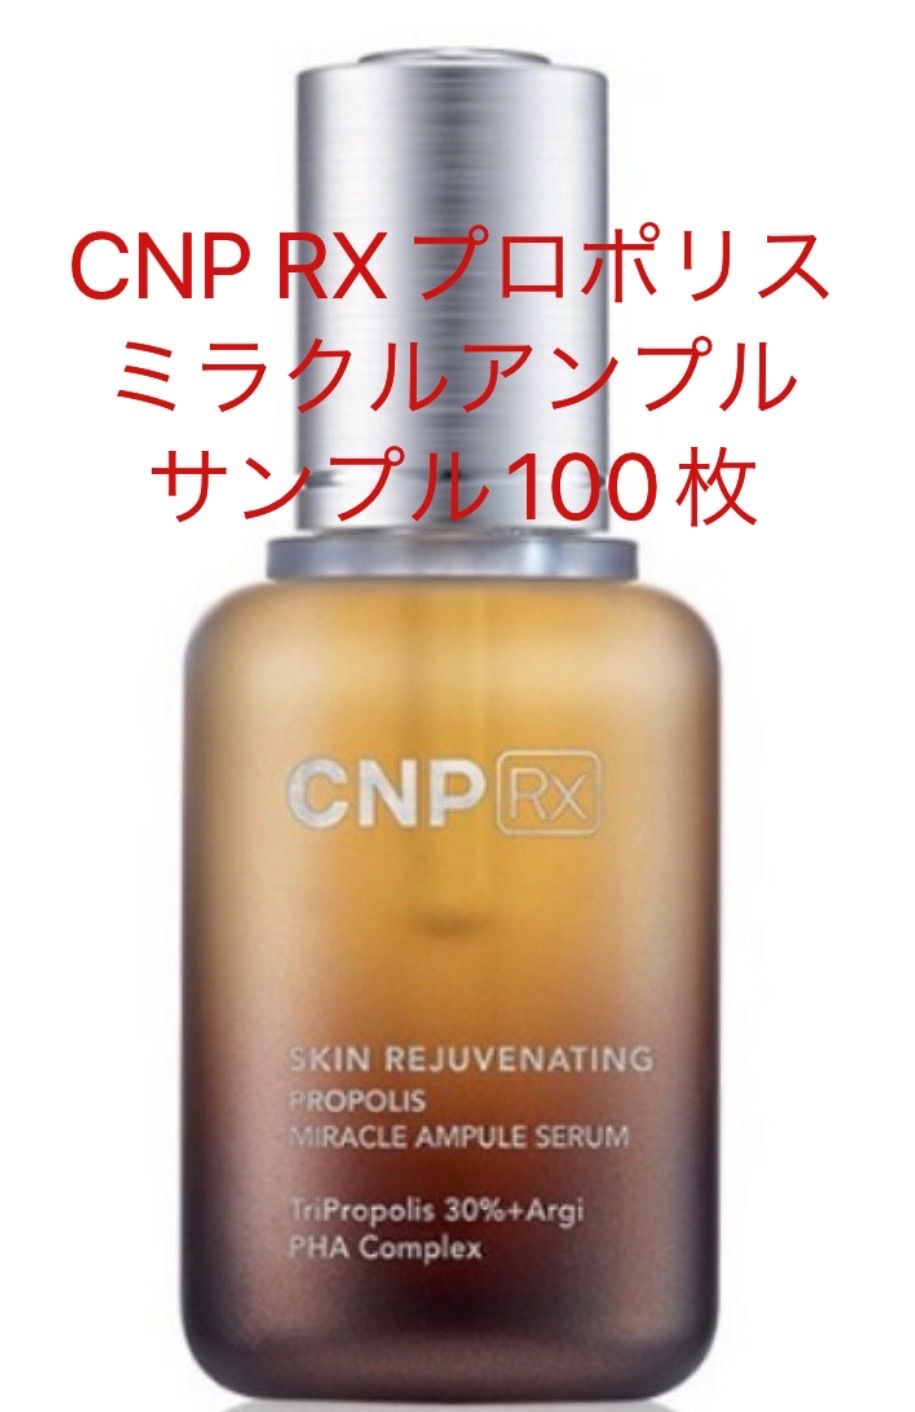 CNP Rx スキン リジュー ヴィネイティング ミラクル エッセンス